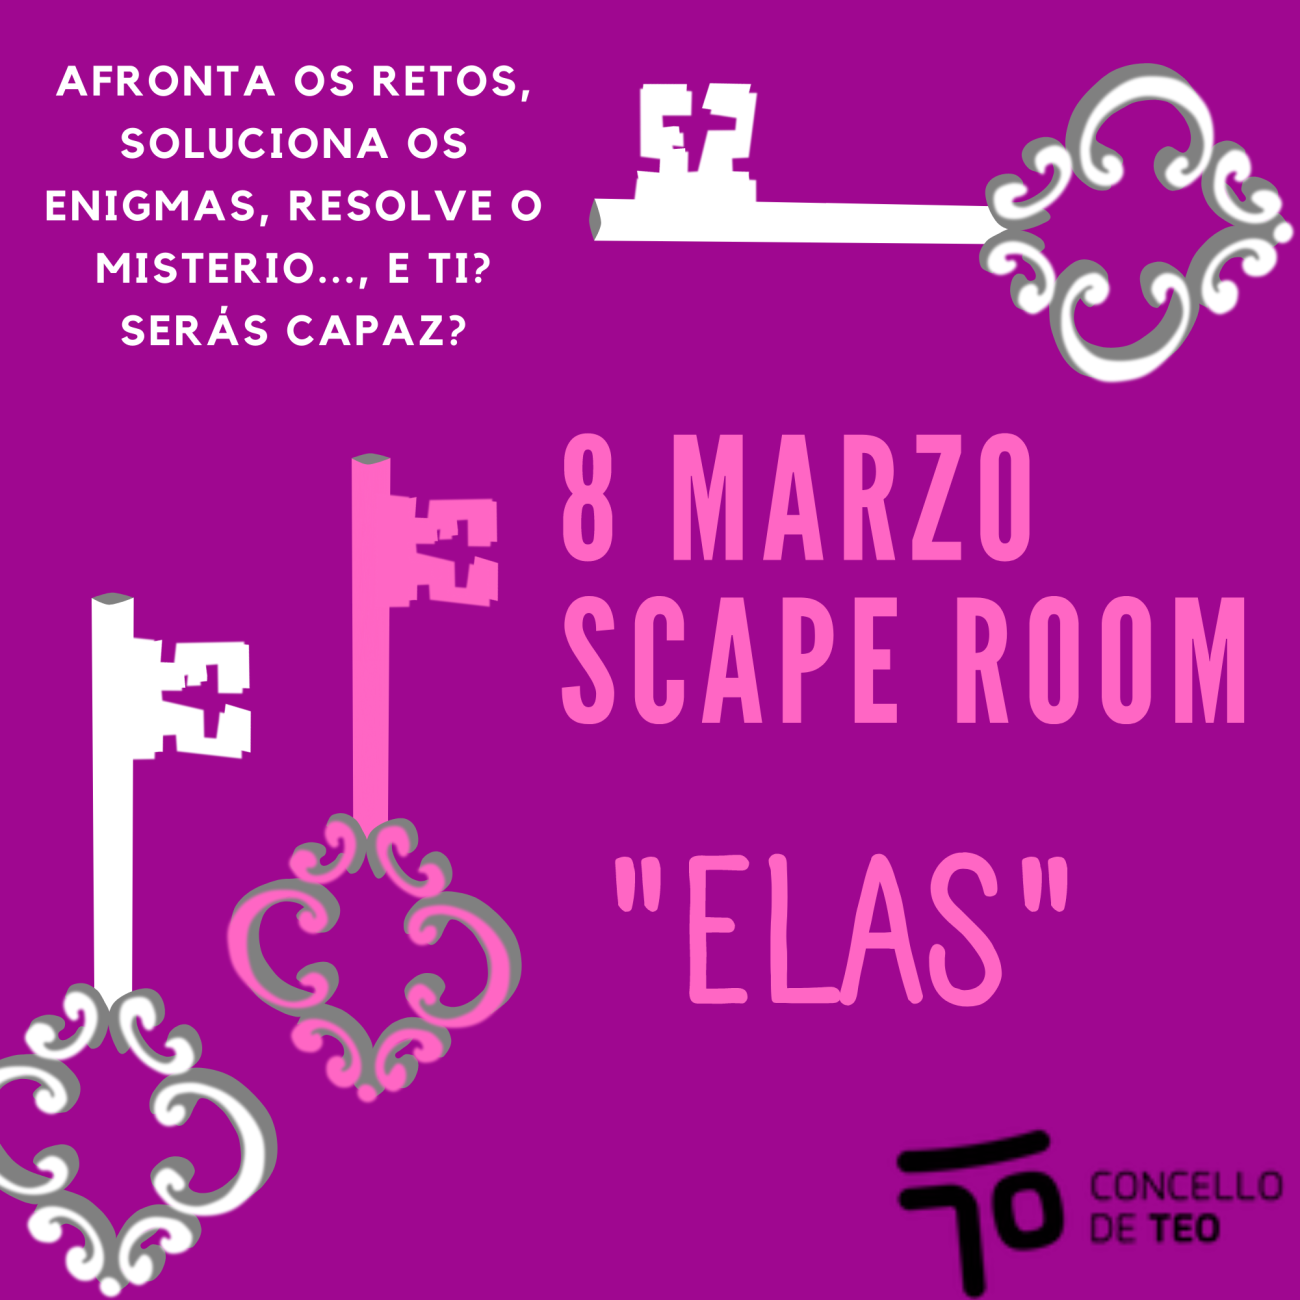 Escape room "elas"